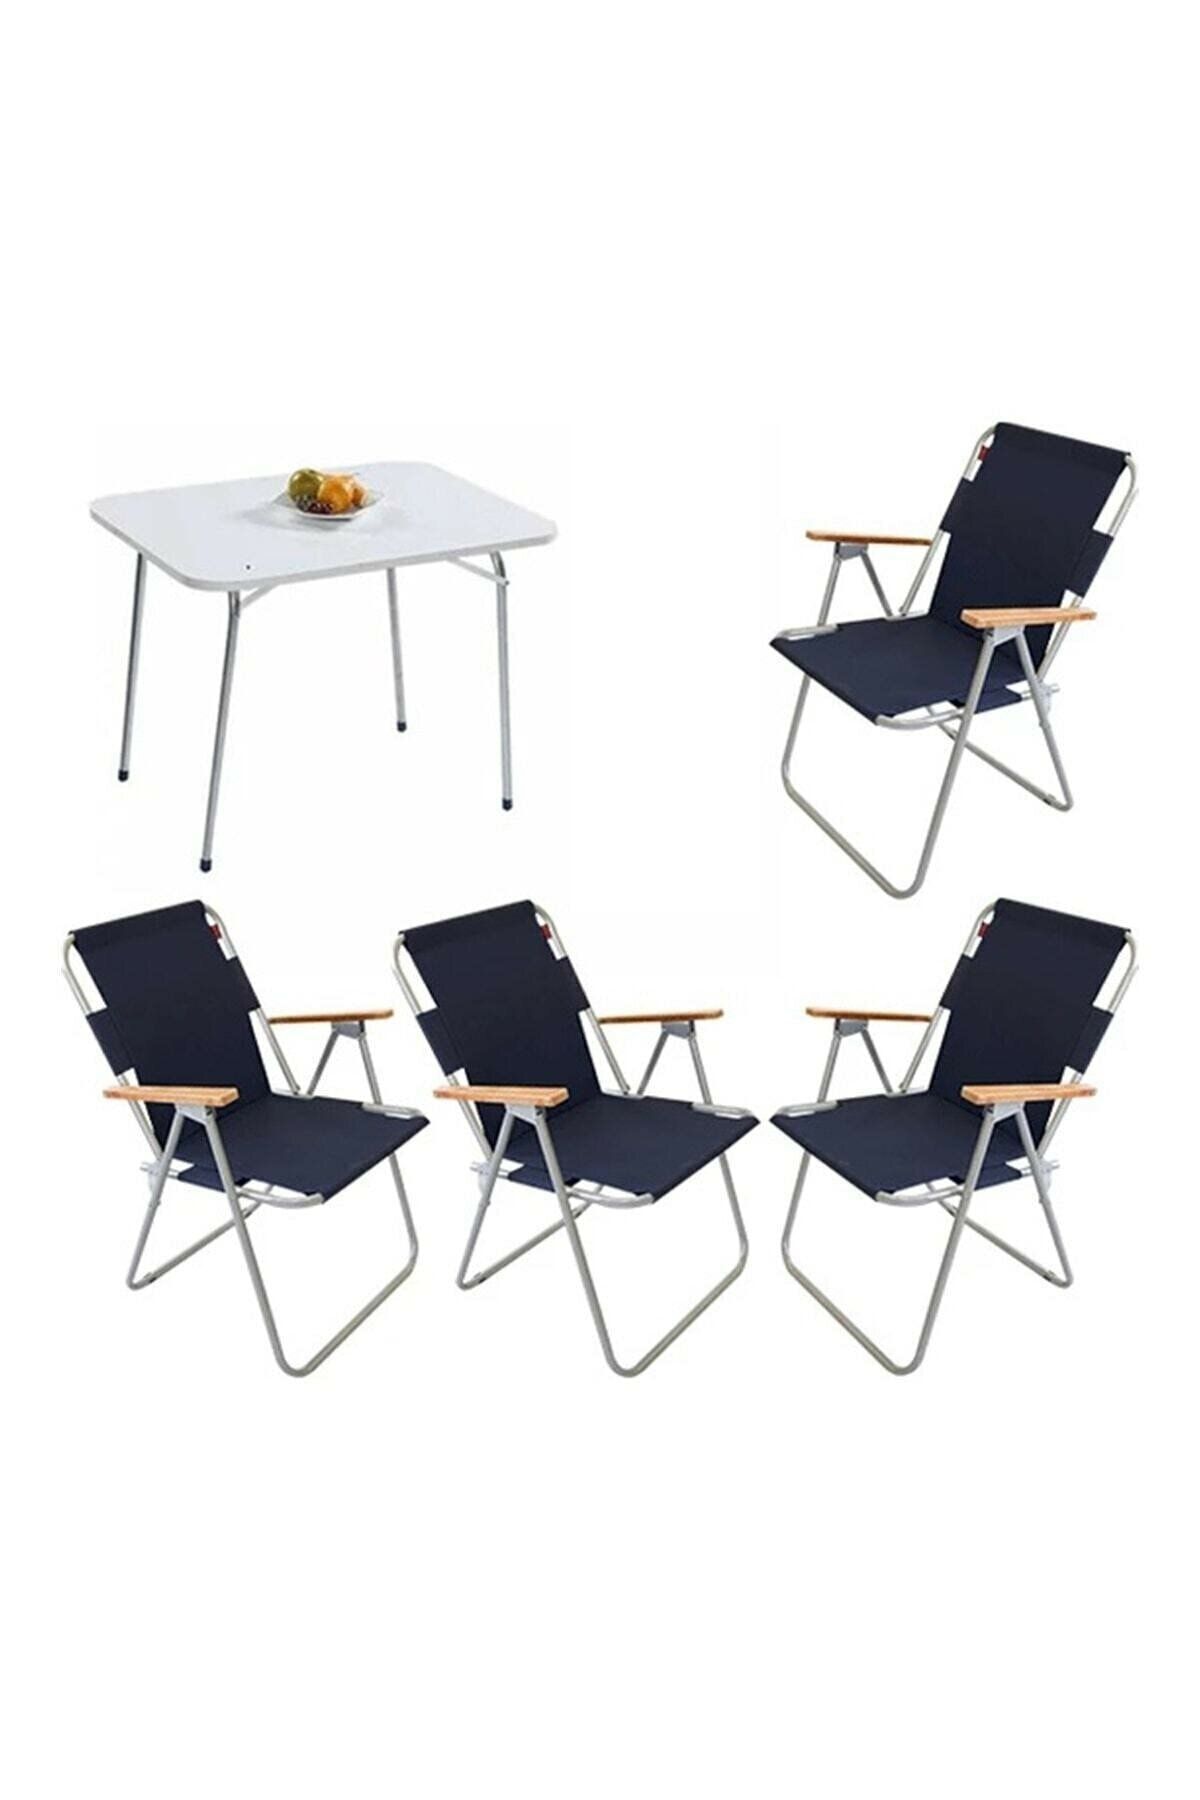 Mocca Style 60x80 Katlanır Masa + 4 Adet Lacivert- Mavi Kamp Sandalyesi Katlanır Sandalye